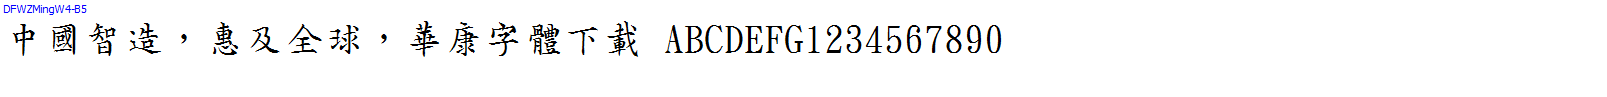 華康字體DFWZMingW4-B5.TTF